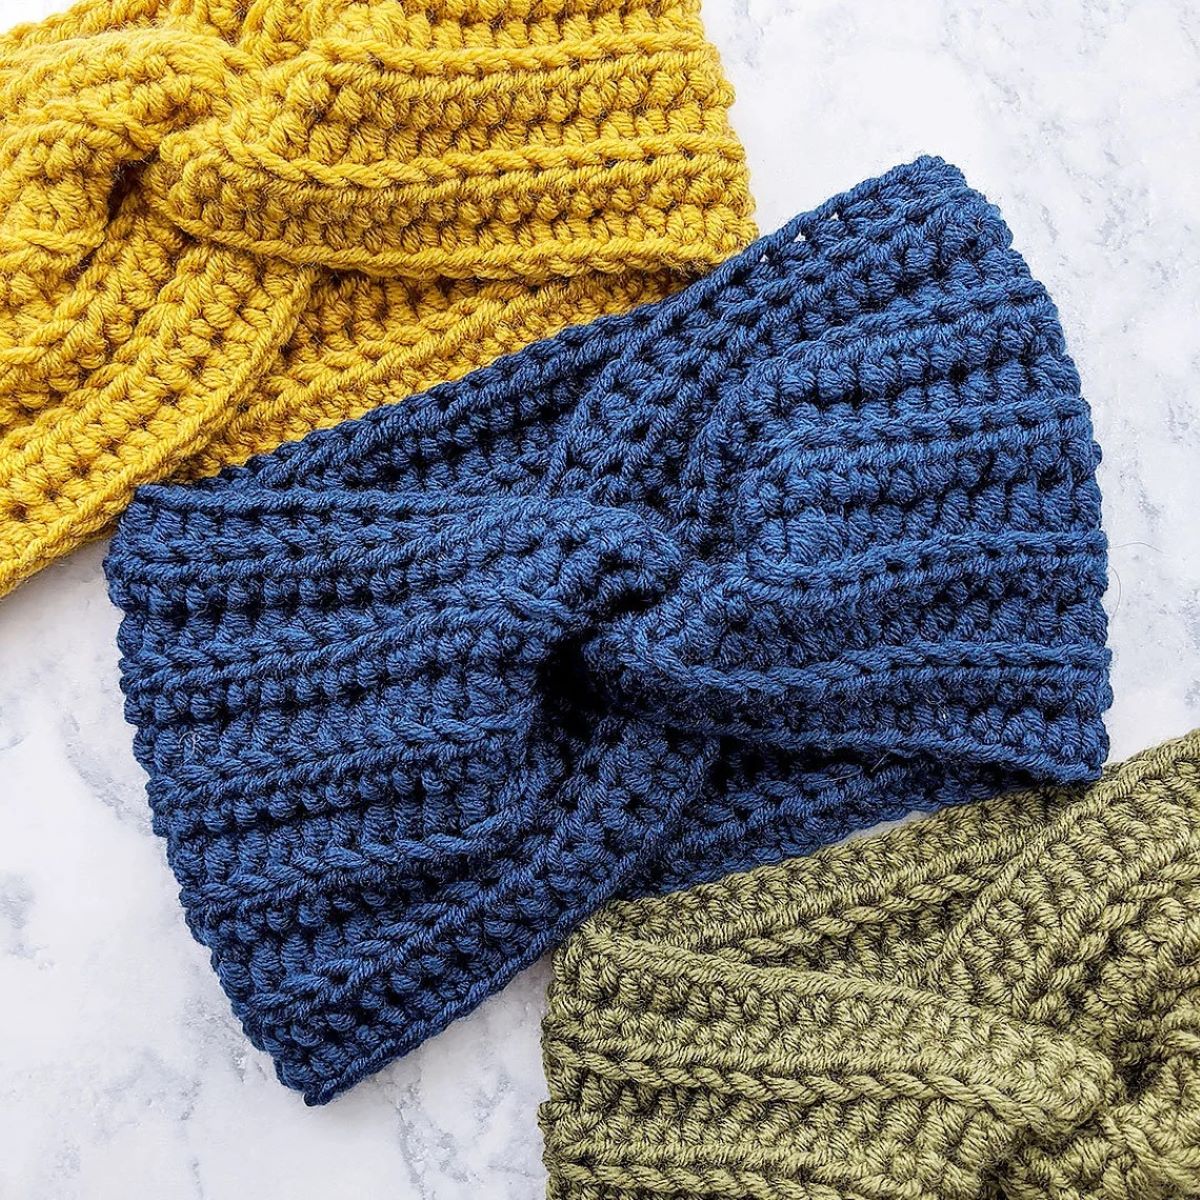 crochet patterns for beginners - blue crochet ear warmer